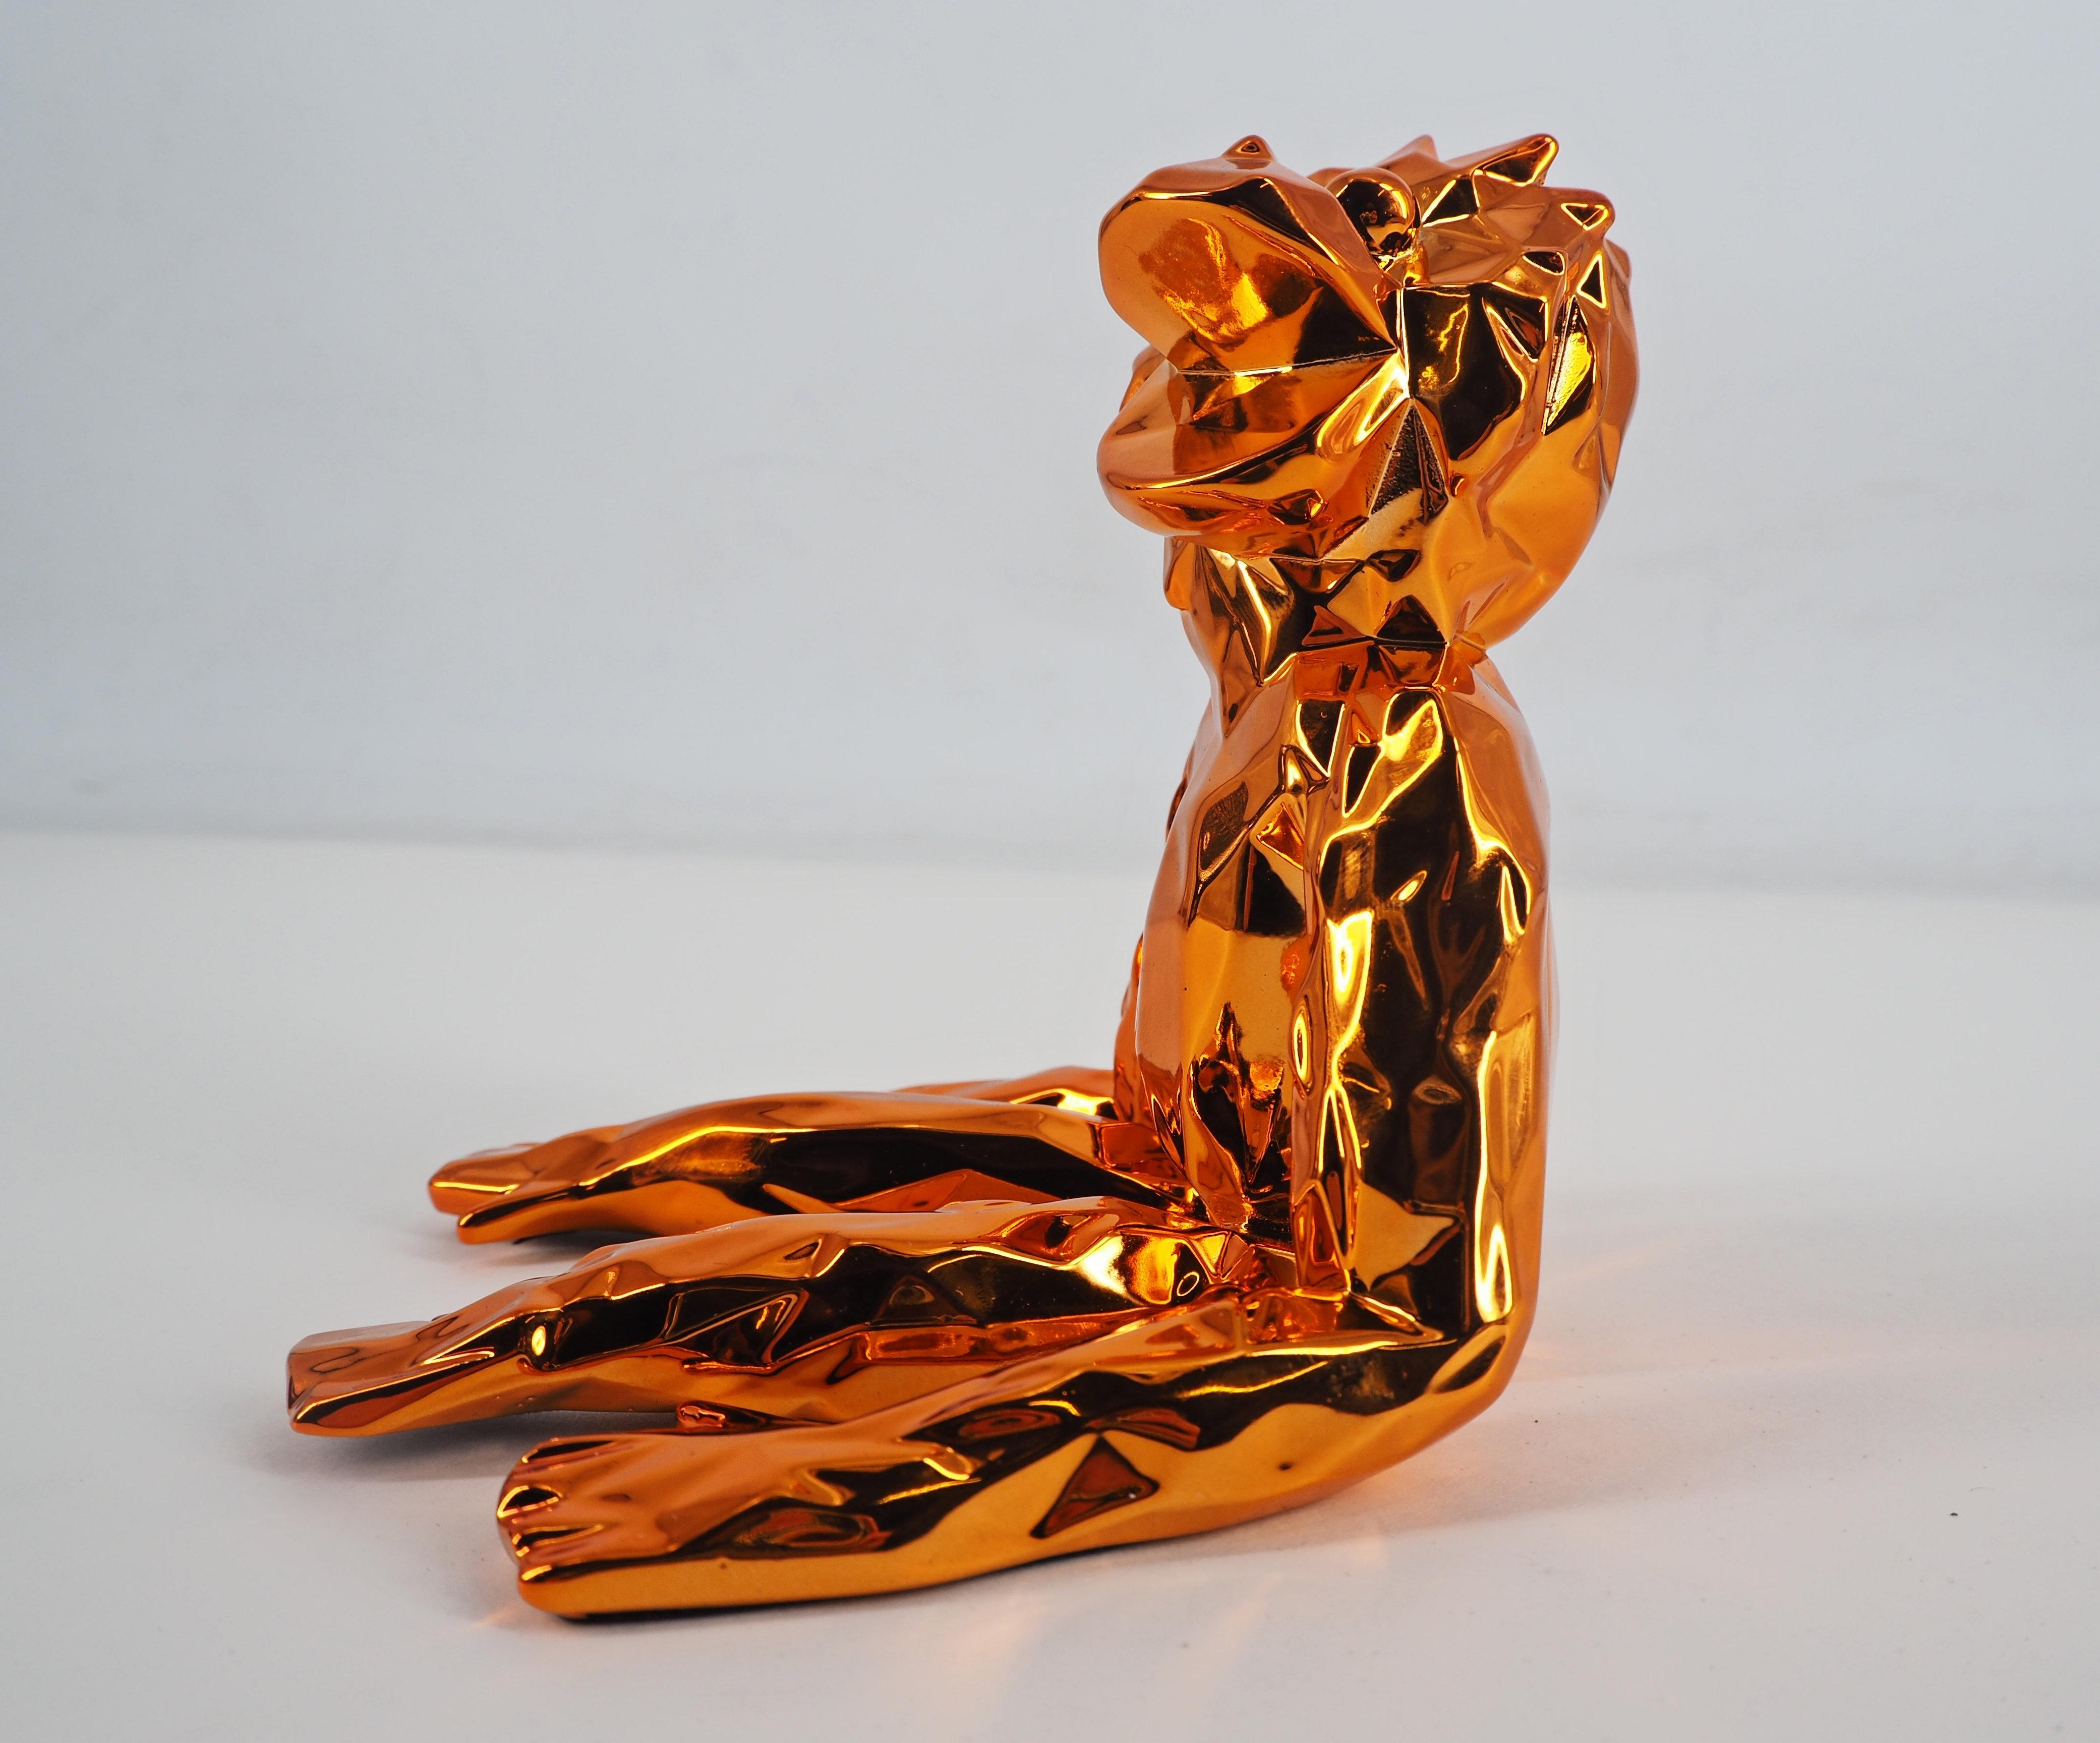 Richard ORLINSKI
Jean-Marc Spirit (édition orange) 

Sculpture en résine
Édition orange
Environ 13 x 11 x 14.5 cm (c. 5.1 x 4.3 x 5.5 in).
Présenté dans sa boîte d'origine avec certificat

Excellent état